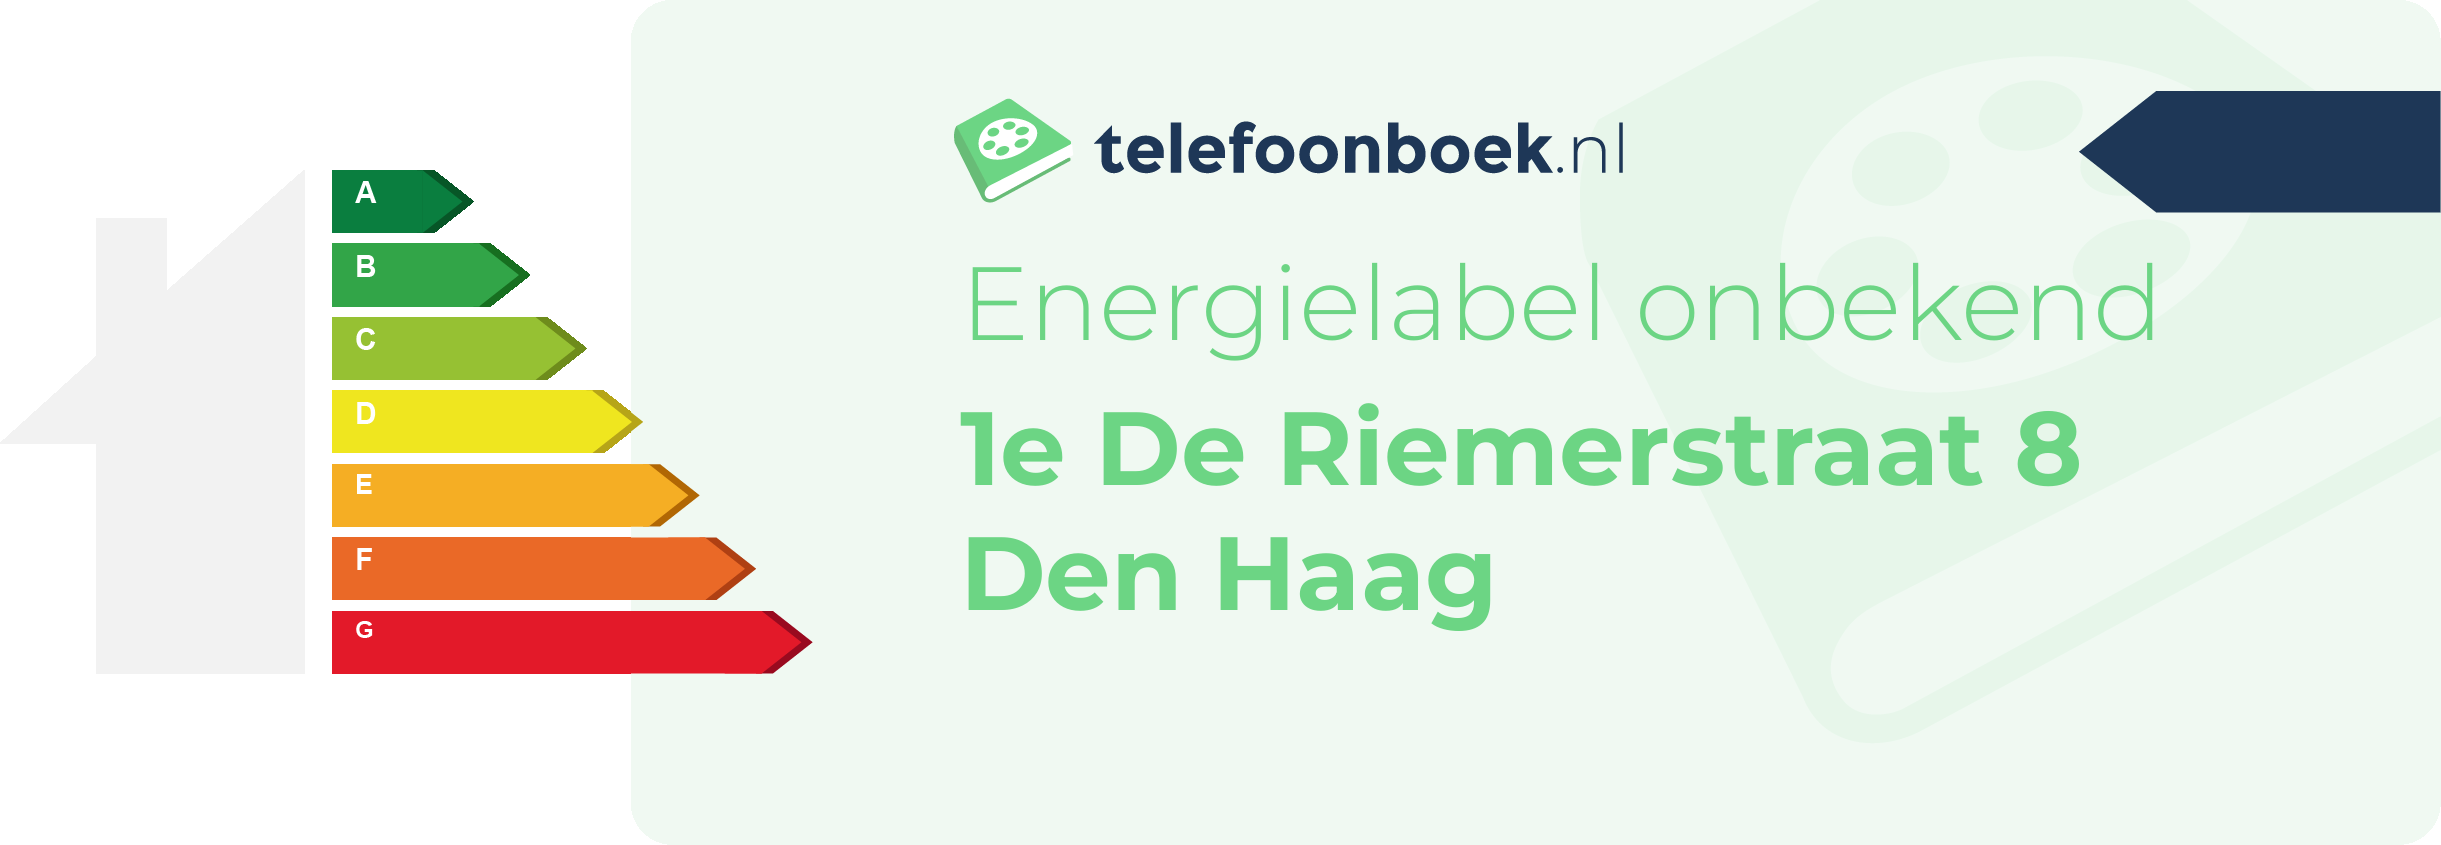 Energielabel 1e De Riemerstraat 8 Den Haag